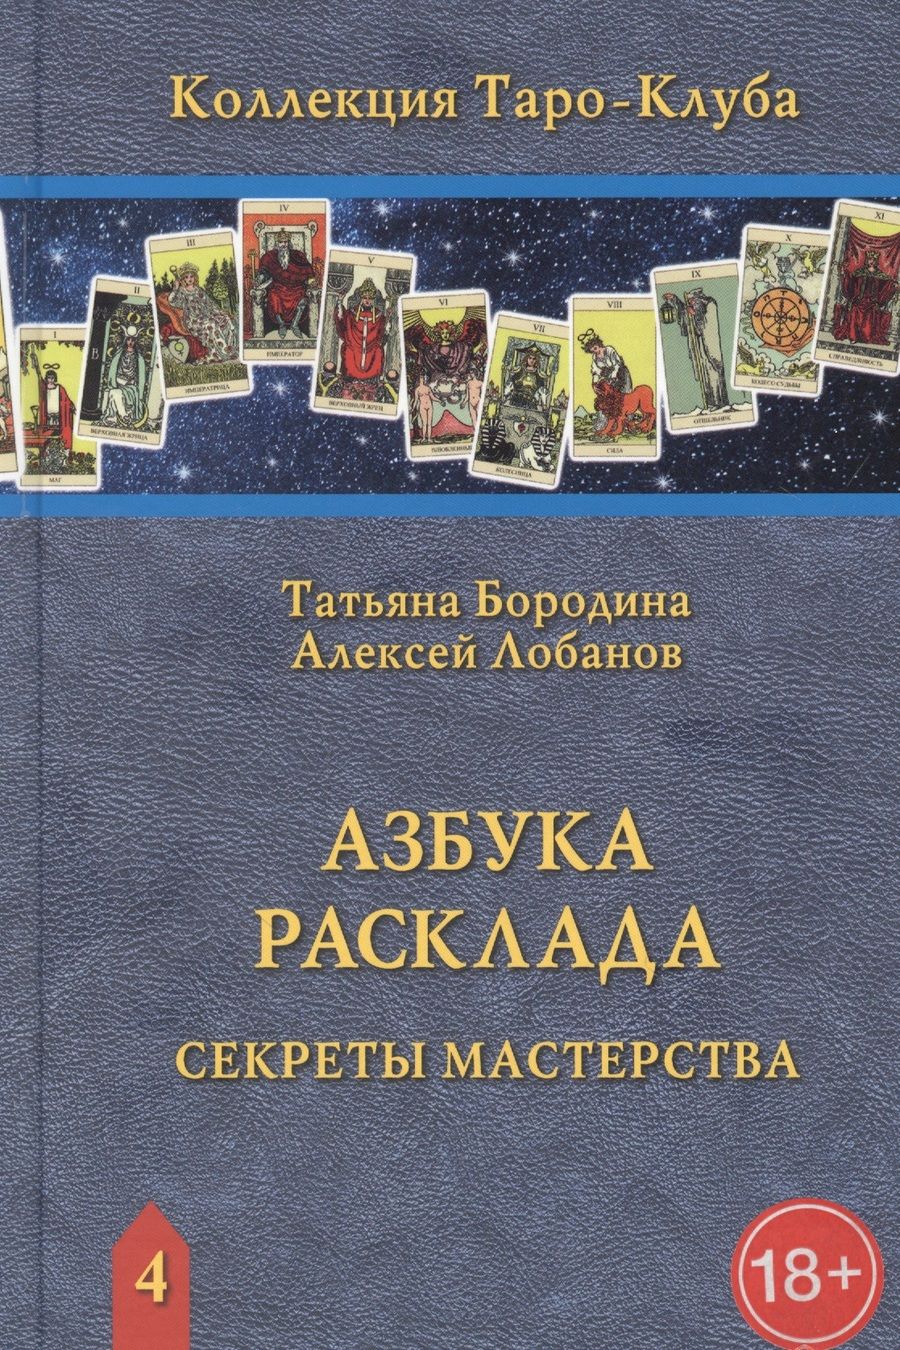 Обложка книги "Лобанов, Бородина: Азбука Расклада. Секреты мастерства"